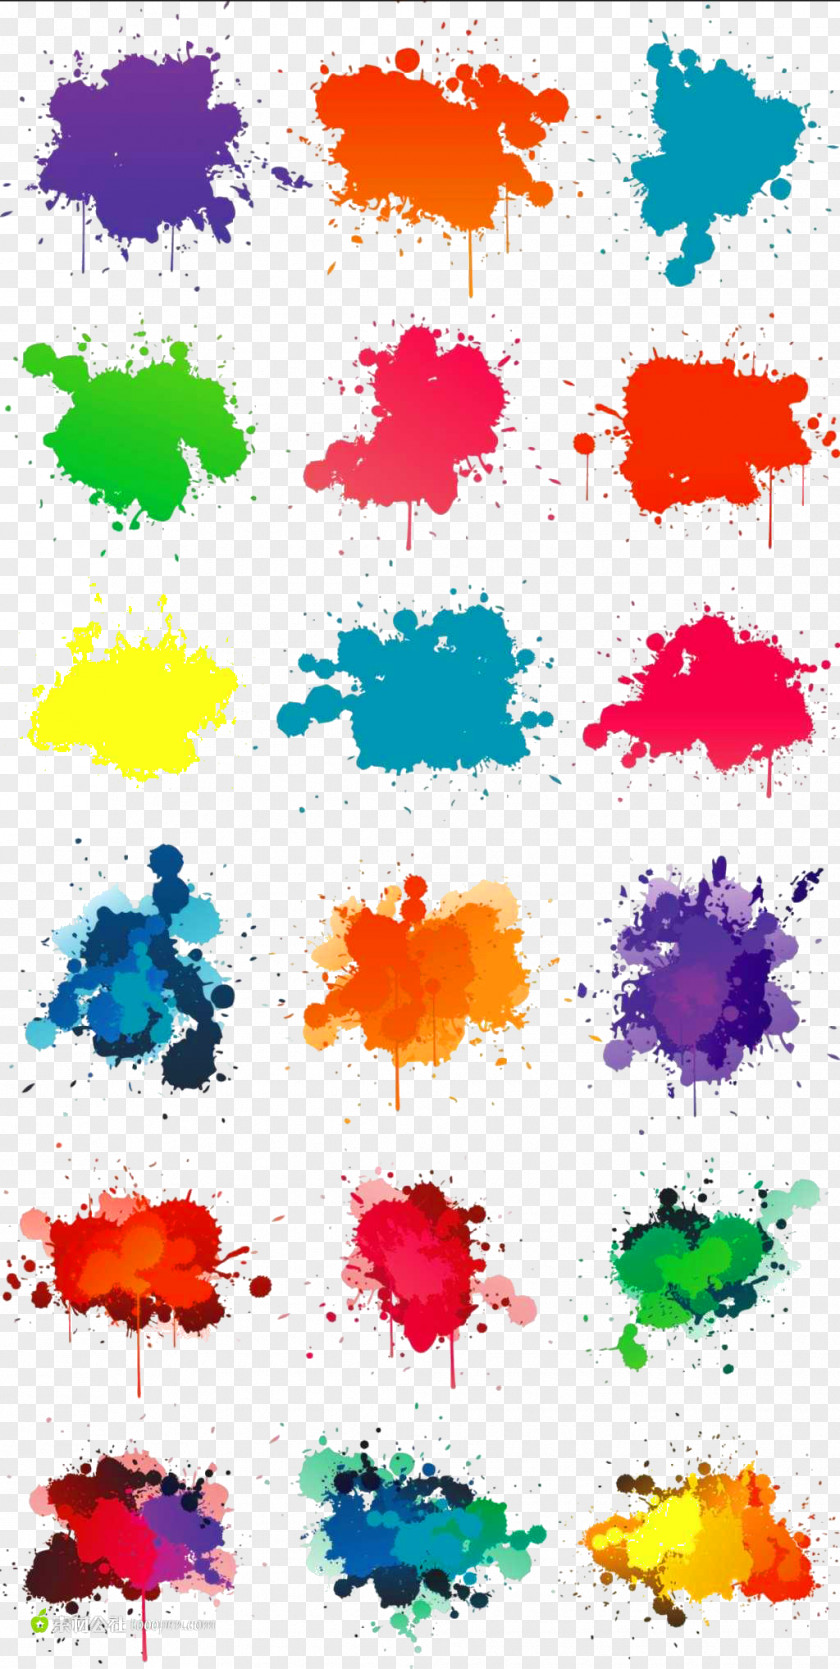 Color Pigment Splash Effect Decorative Elements PNG pigment splash effect decorative elements clipart PNG